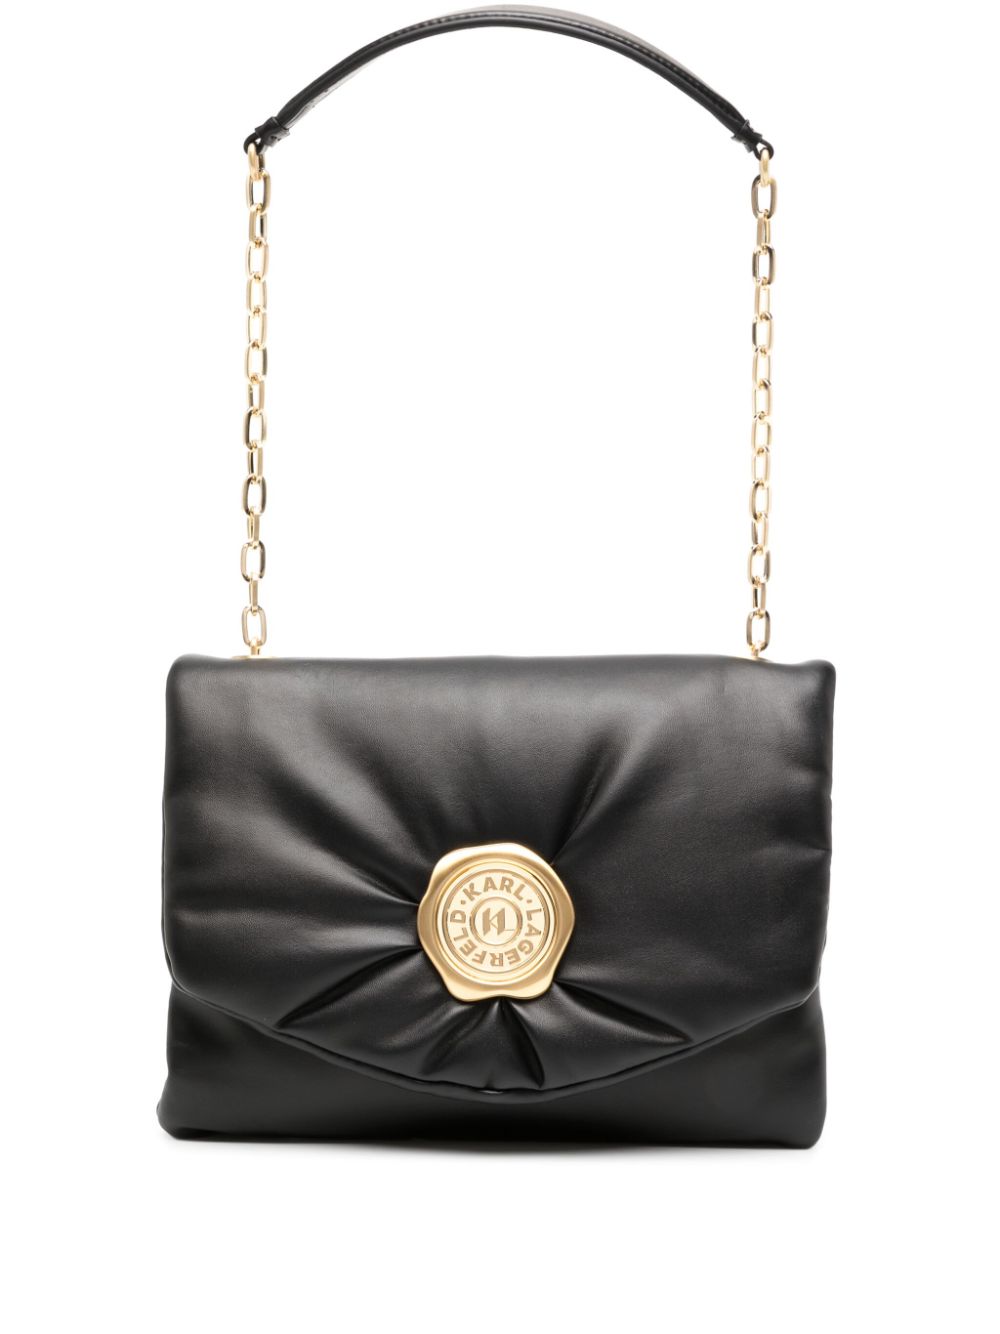 Image 1 of Karl Lagerfeld K/Stamp leather shoulder bag